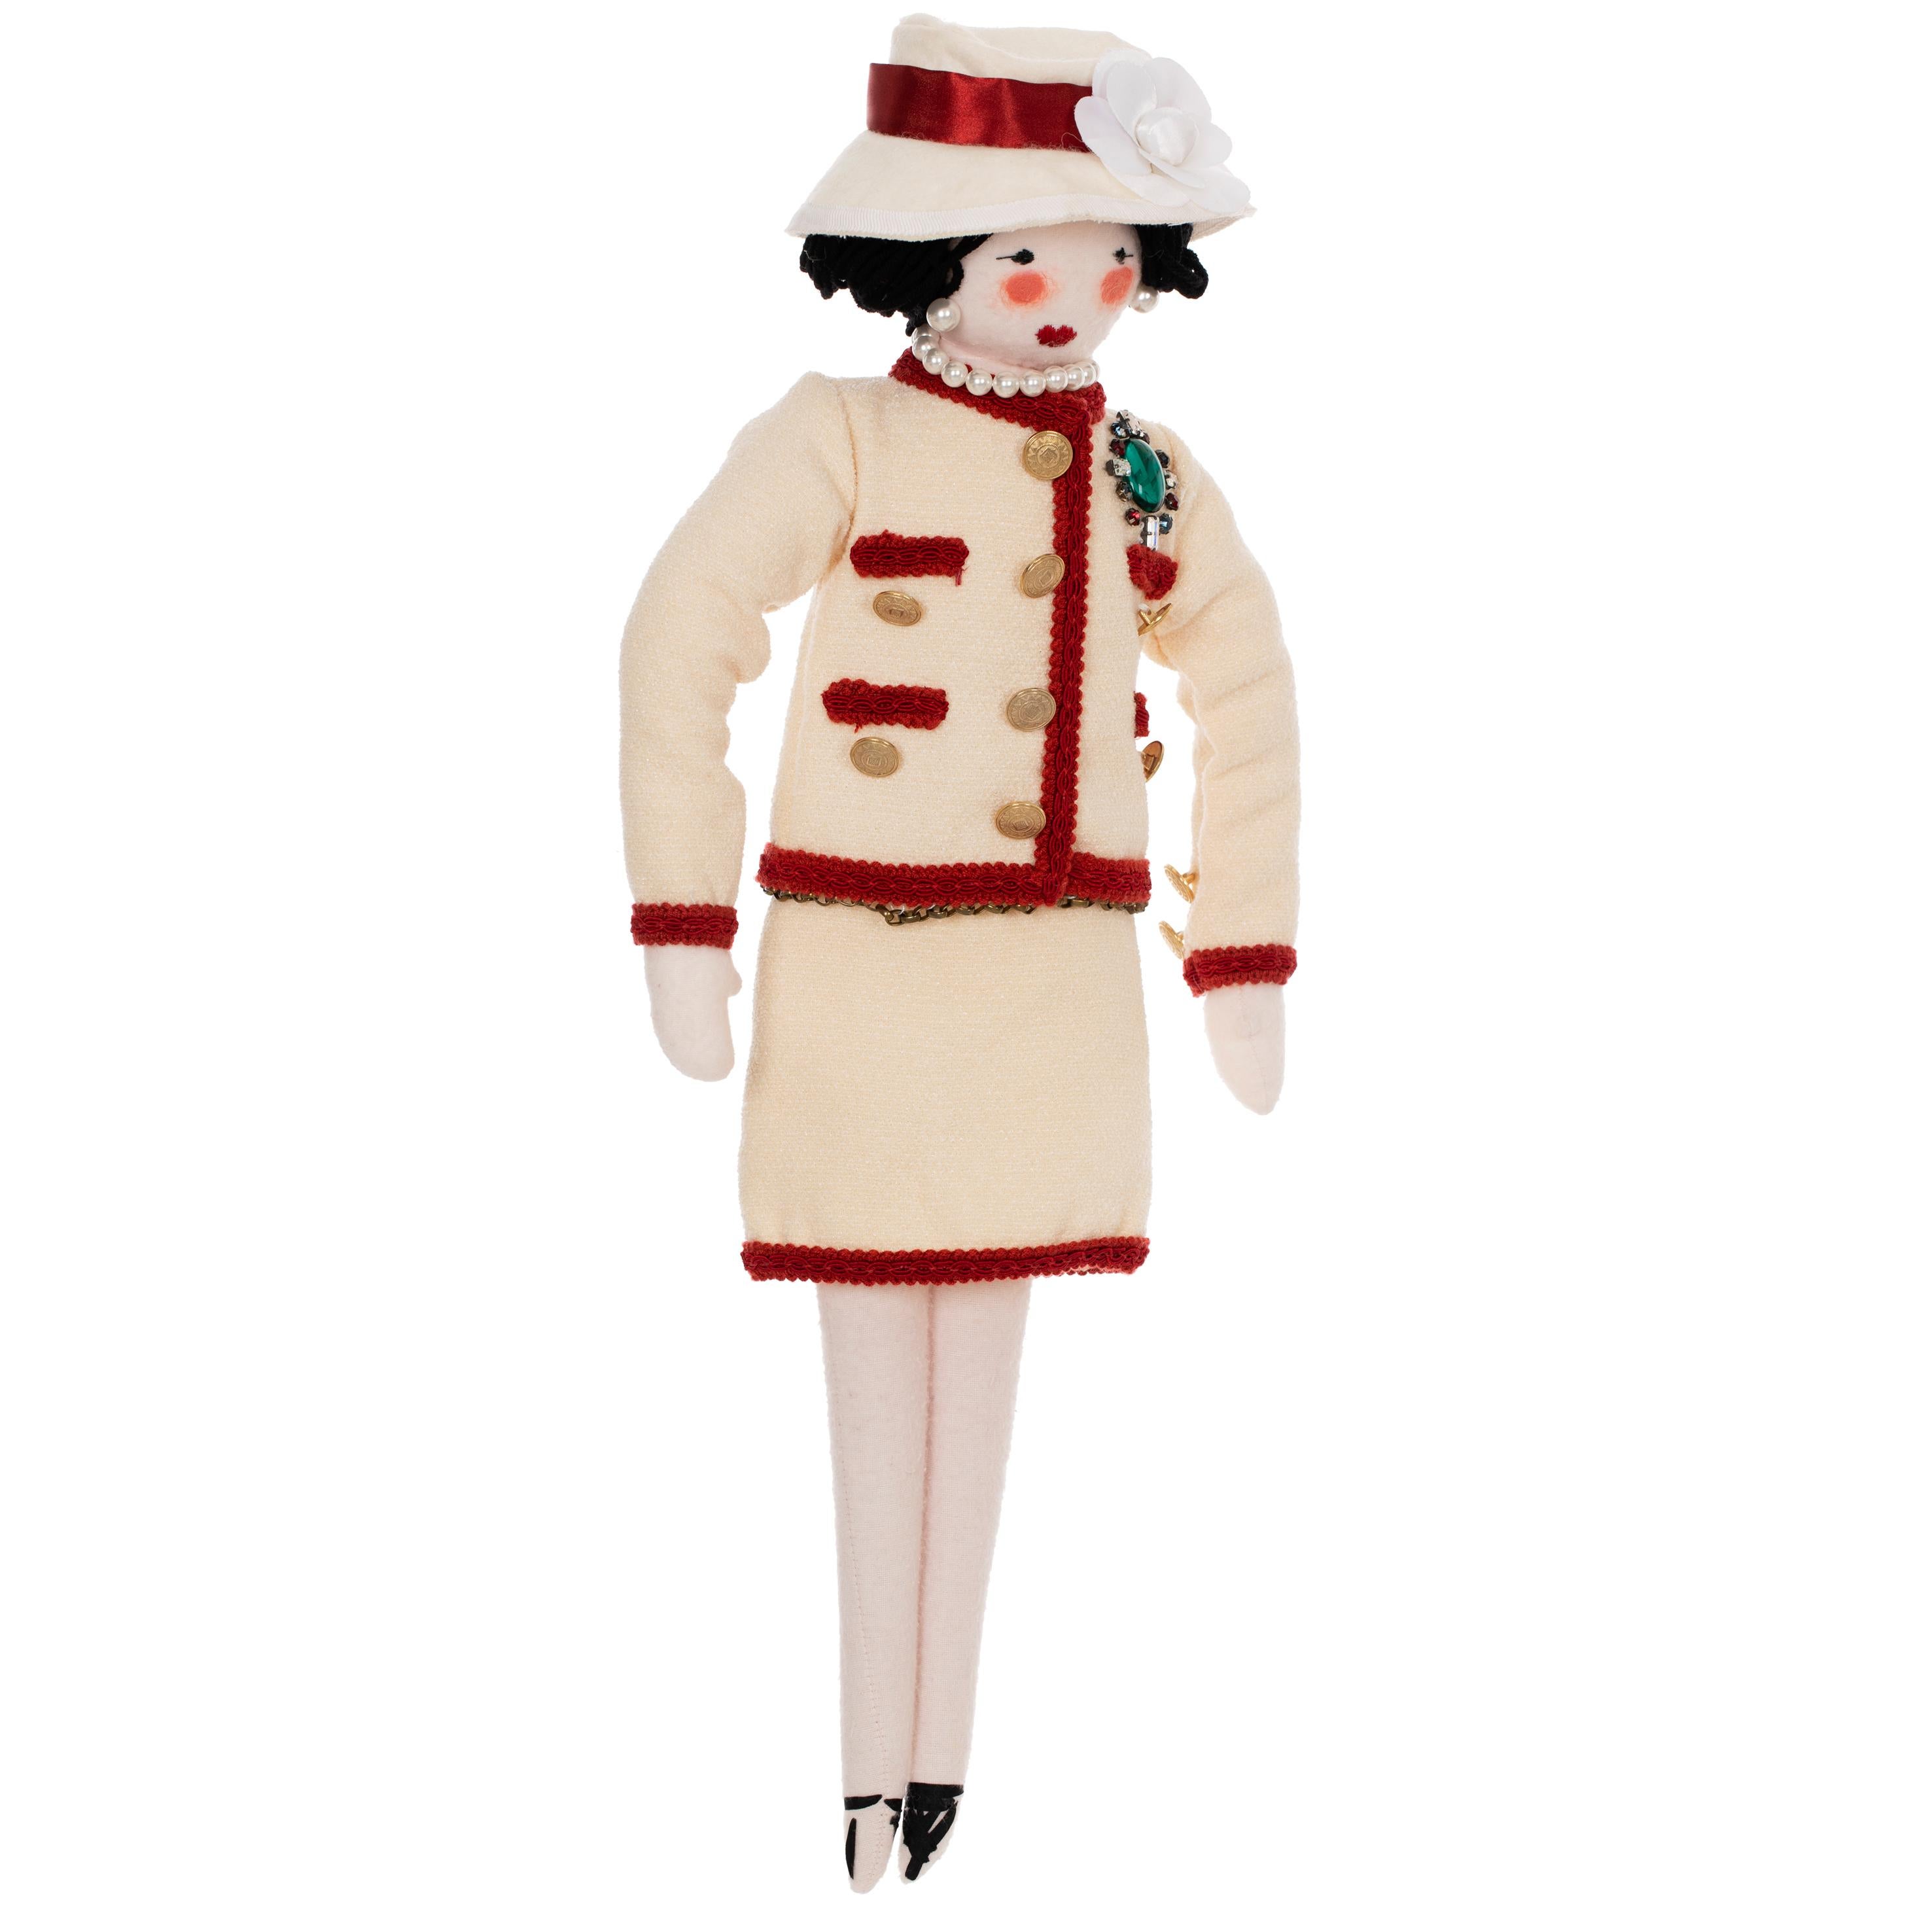 Cette poupée de chiffon classique Mademoiselle Coco de Chanel rend hommage à la fondatrice de la marque, Gabrielle 'Coco' Chanel. Fabrice en coton, la poupée est vêtue d'un tailleur jupe sans col caractéristique des années 60 qui incarne l'élégance